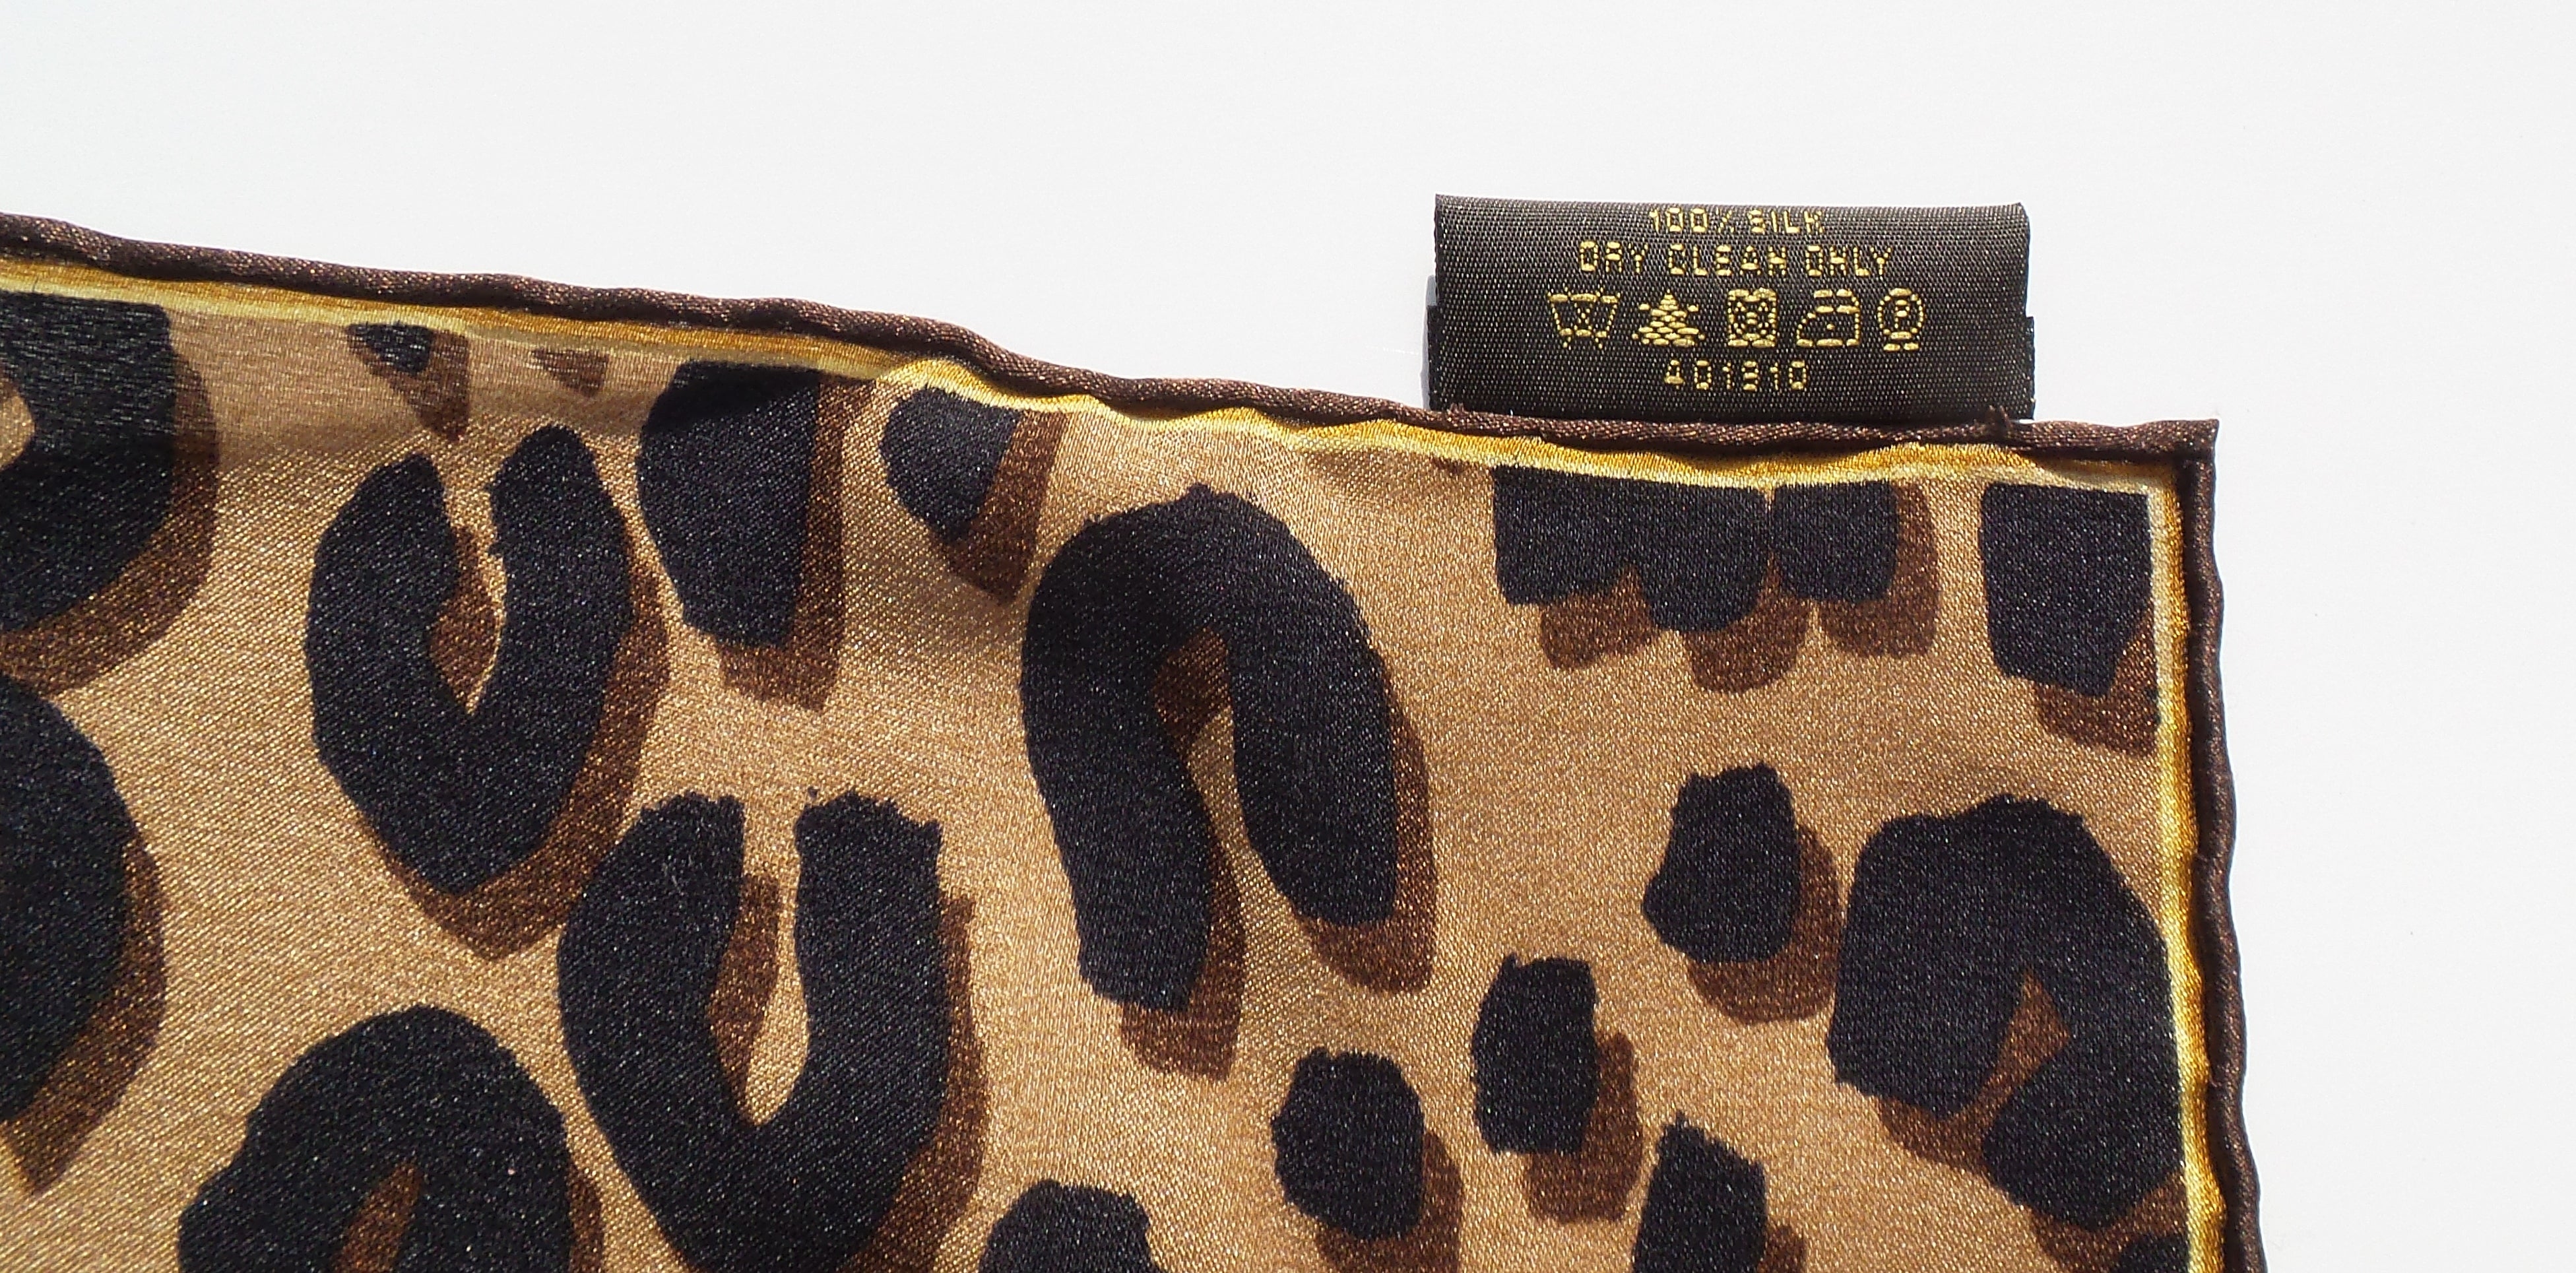 Louis Vuitton Chale Monogram Leopard print Cotton ref.549657